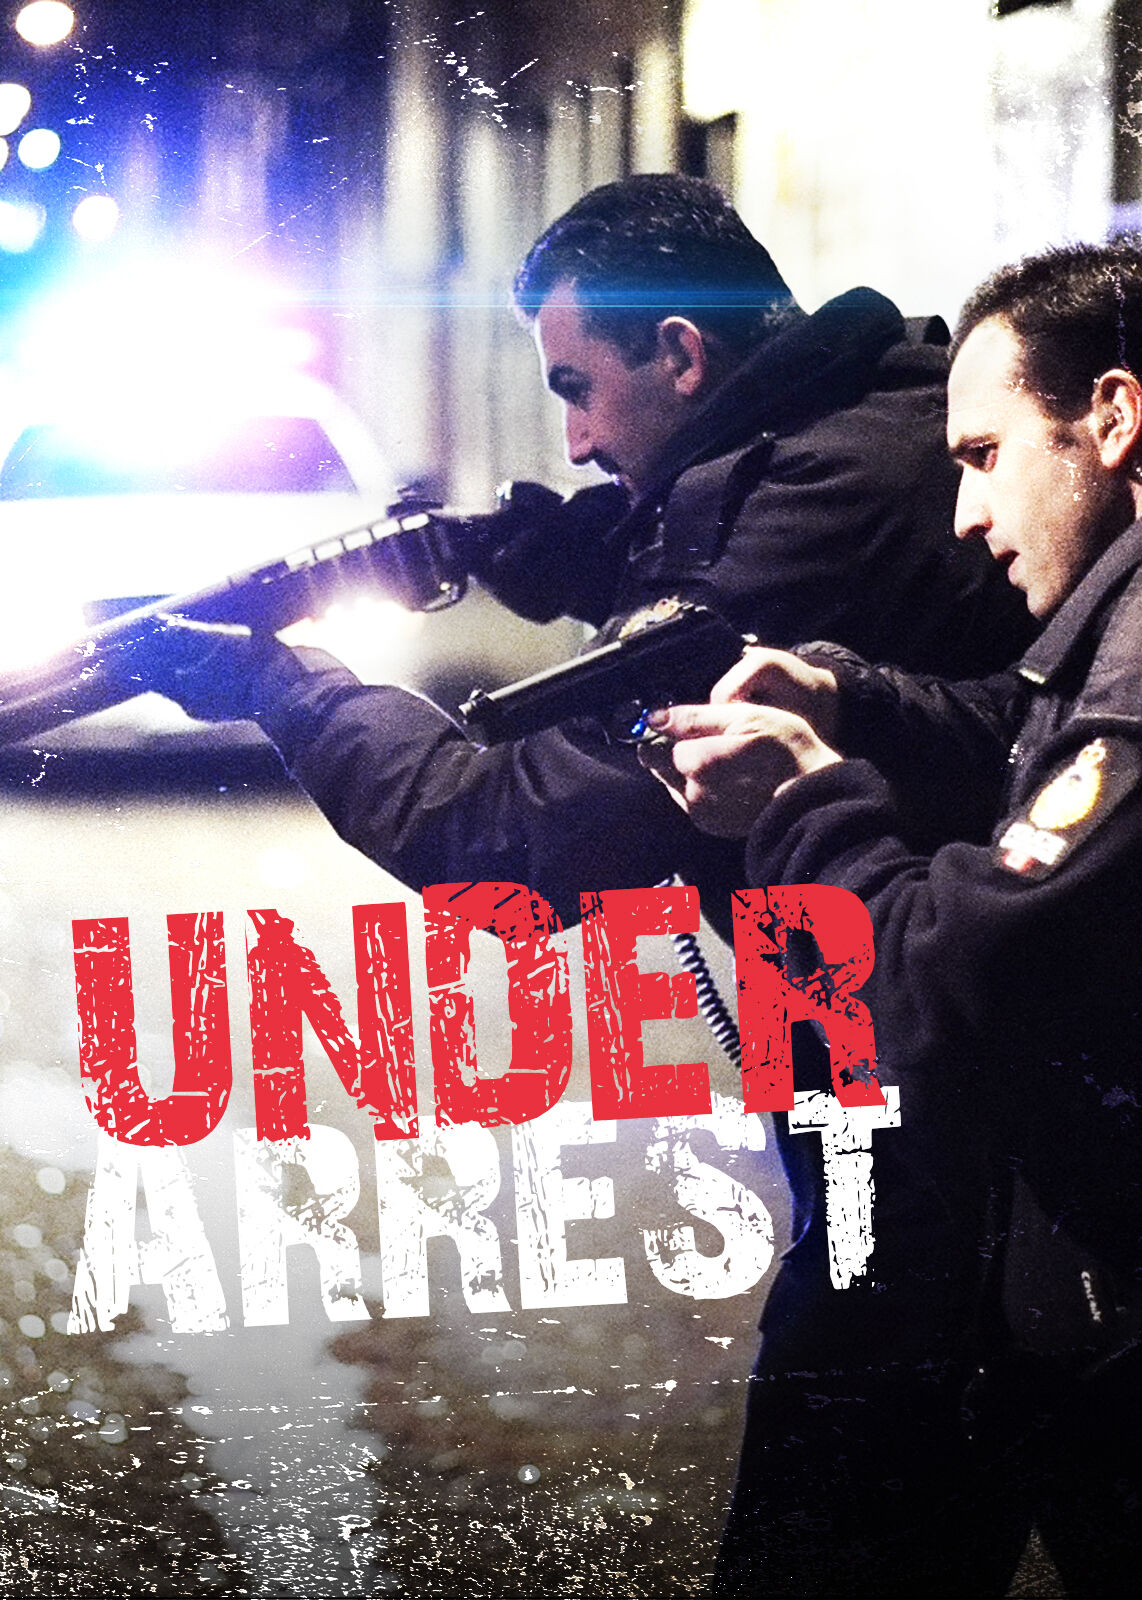 Under Arrest - police series on Netflix